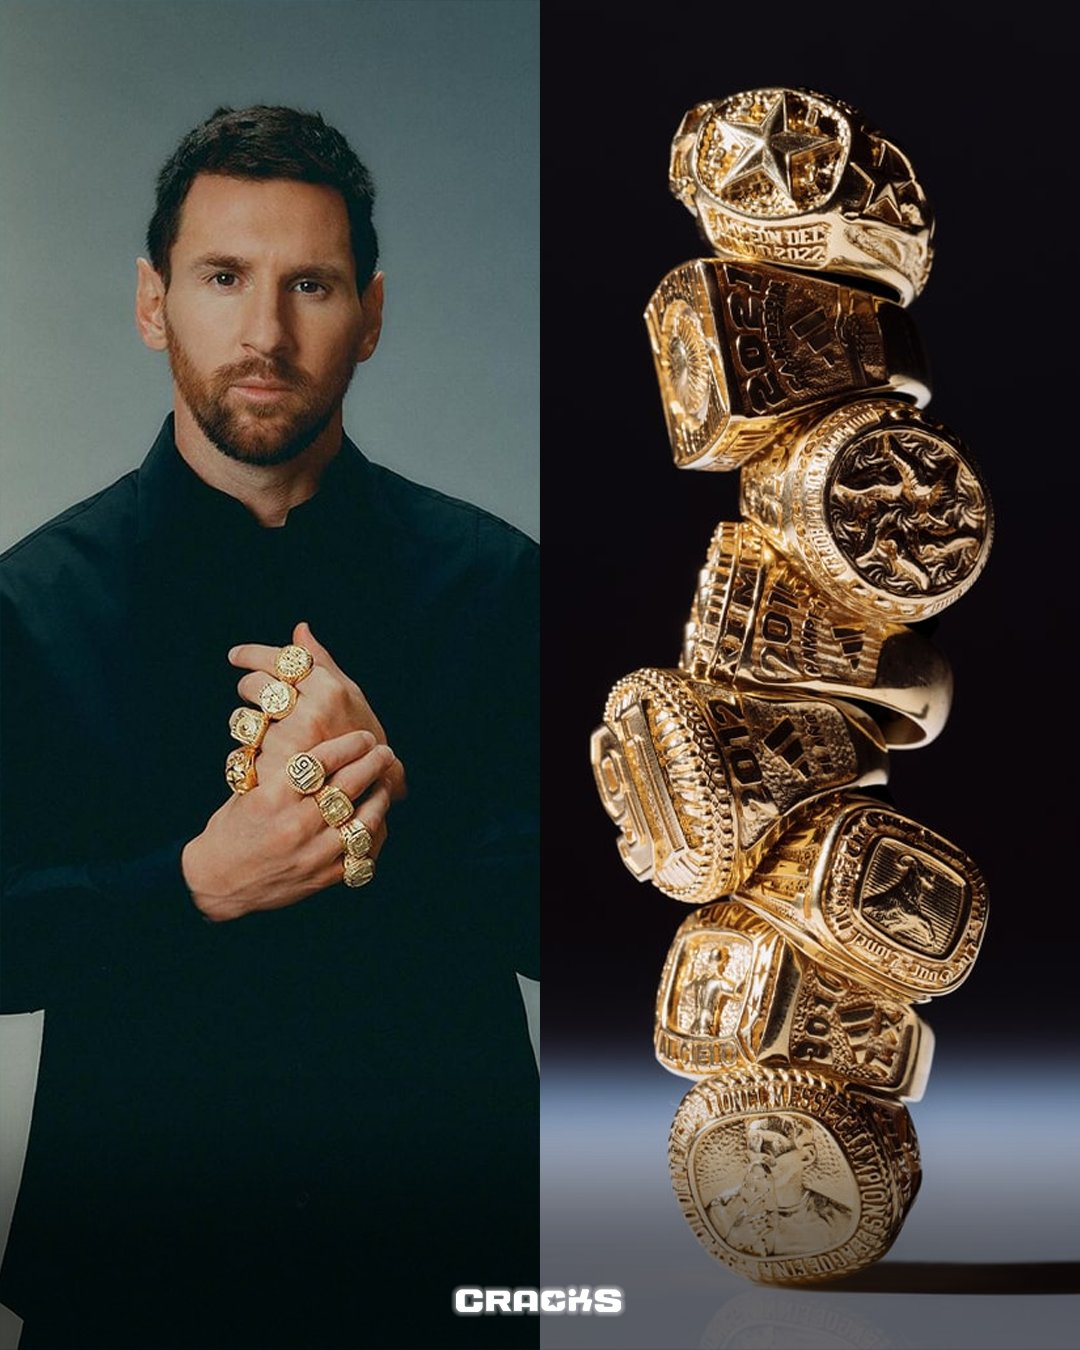 CRACKS on X: "Más REGALOS para MESSI. adidas entregó ocho anillos distintos a Lionel Messi representando cada uno de los balones de oro que ganó en su carrera. ¿Qué les parece?